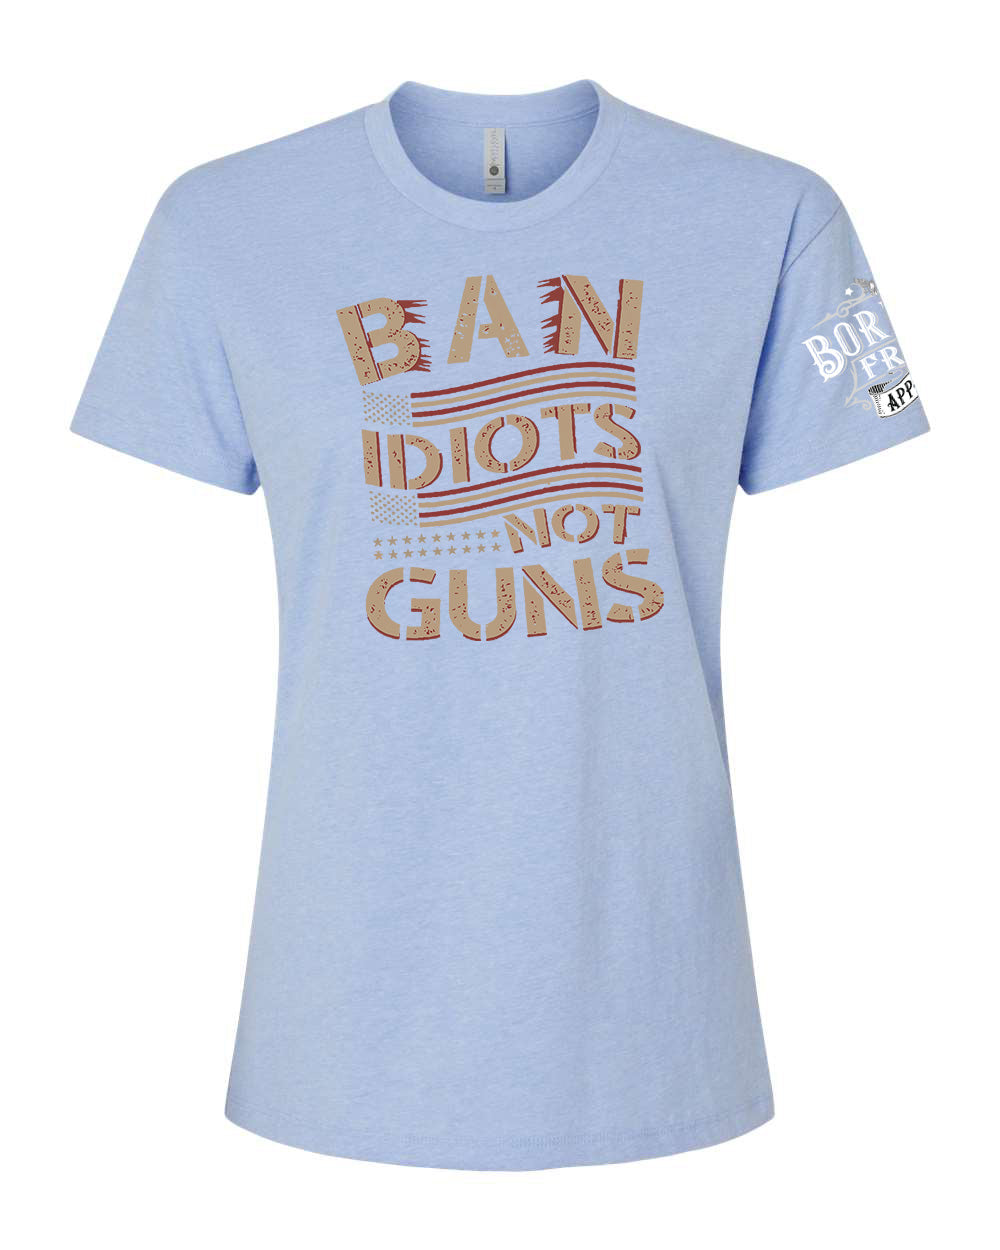 Ban Idiots Not Guns